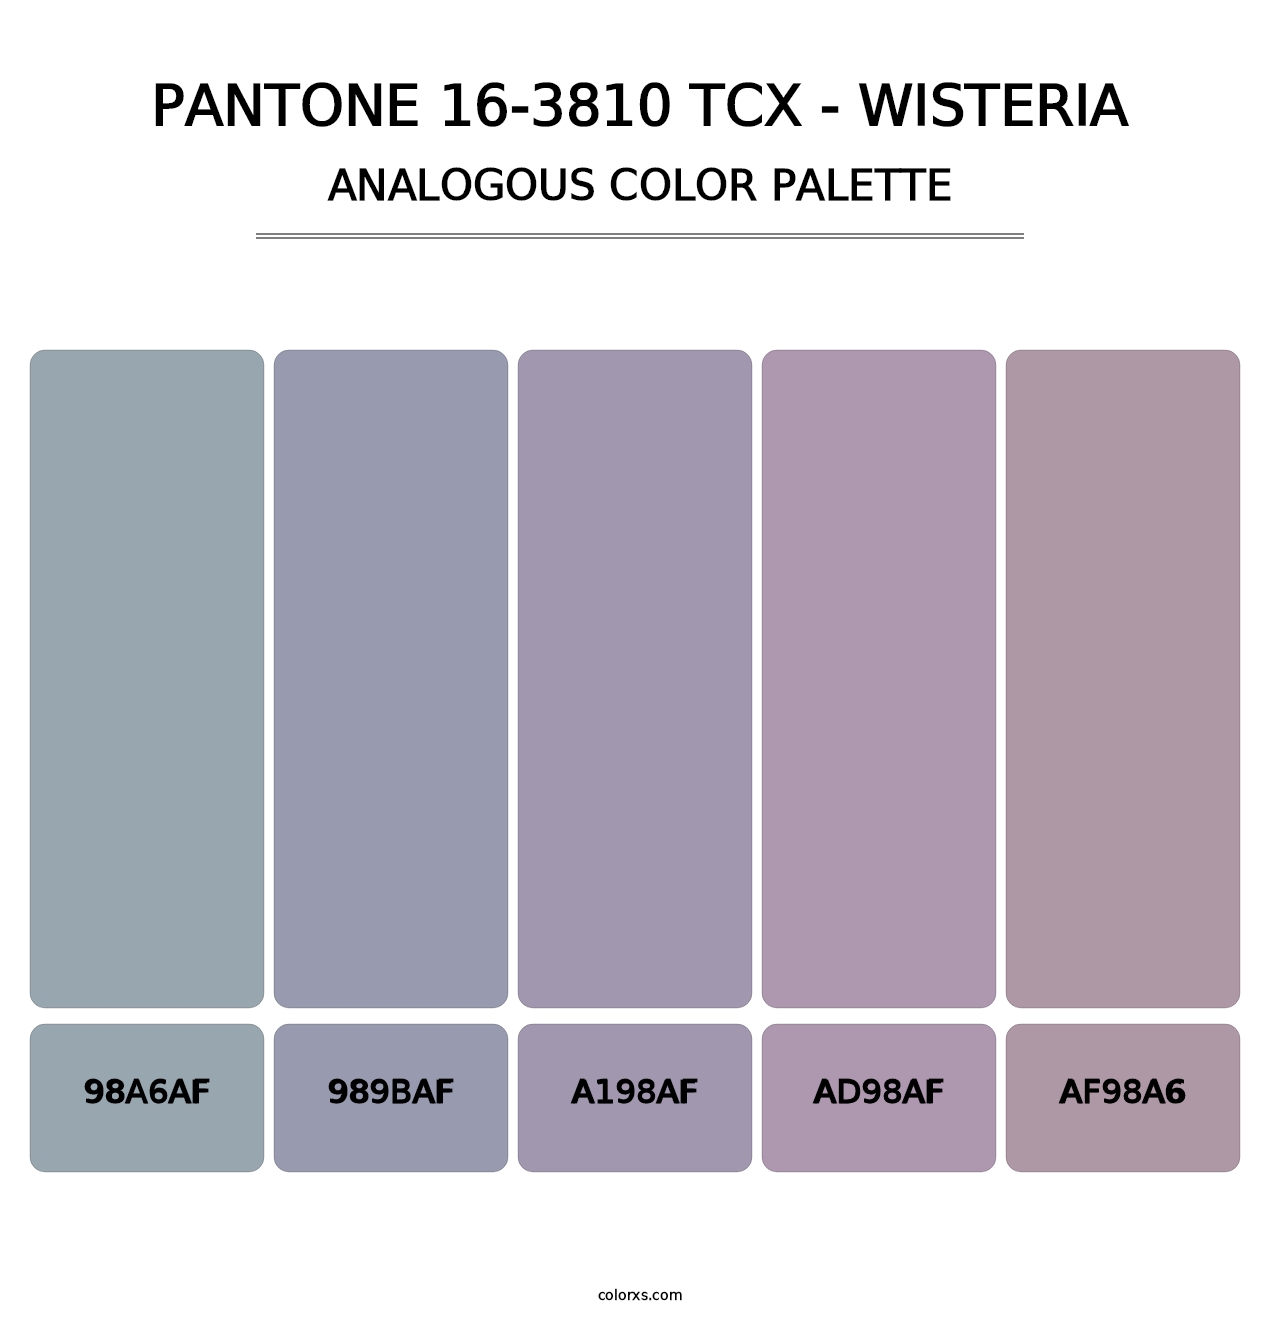 PANTONE 16-3810 TCX - Wisteria - Analogous Color Palette